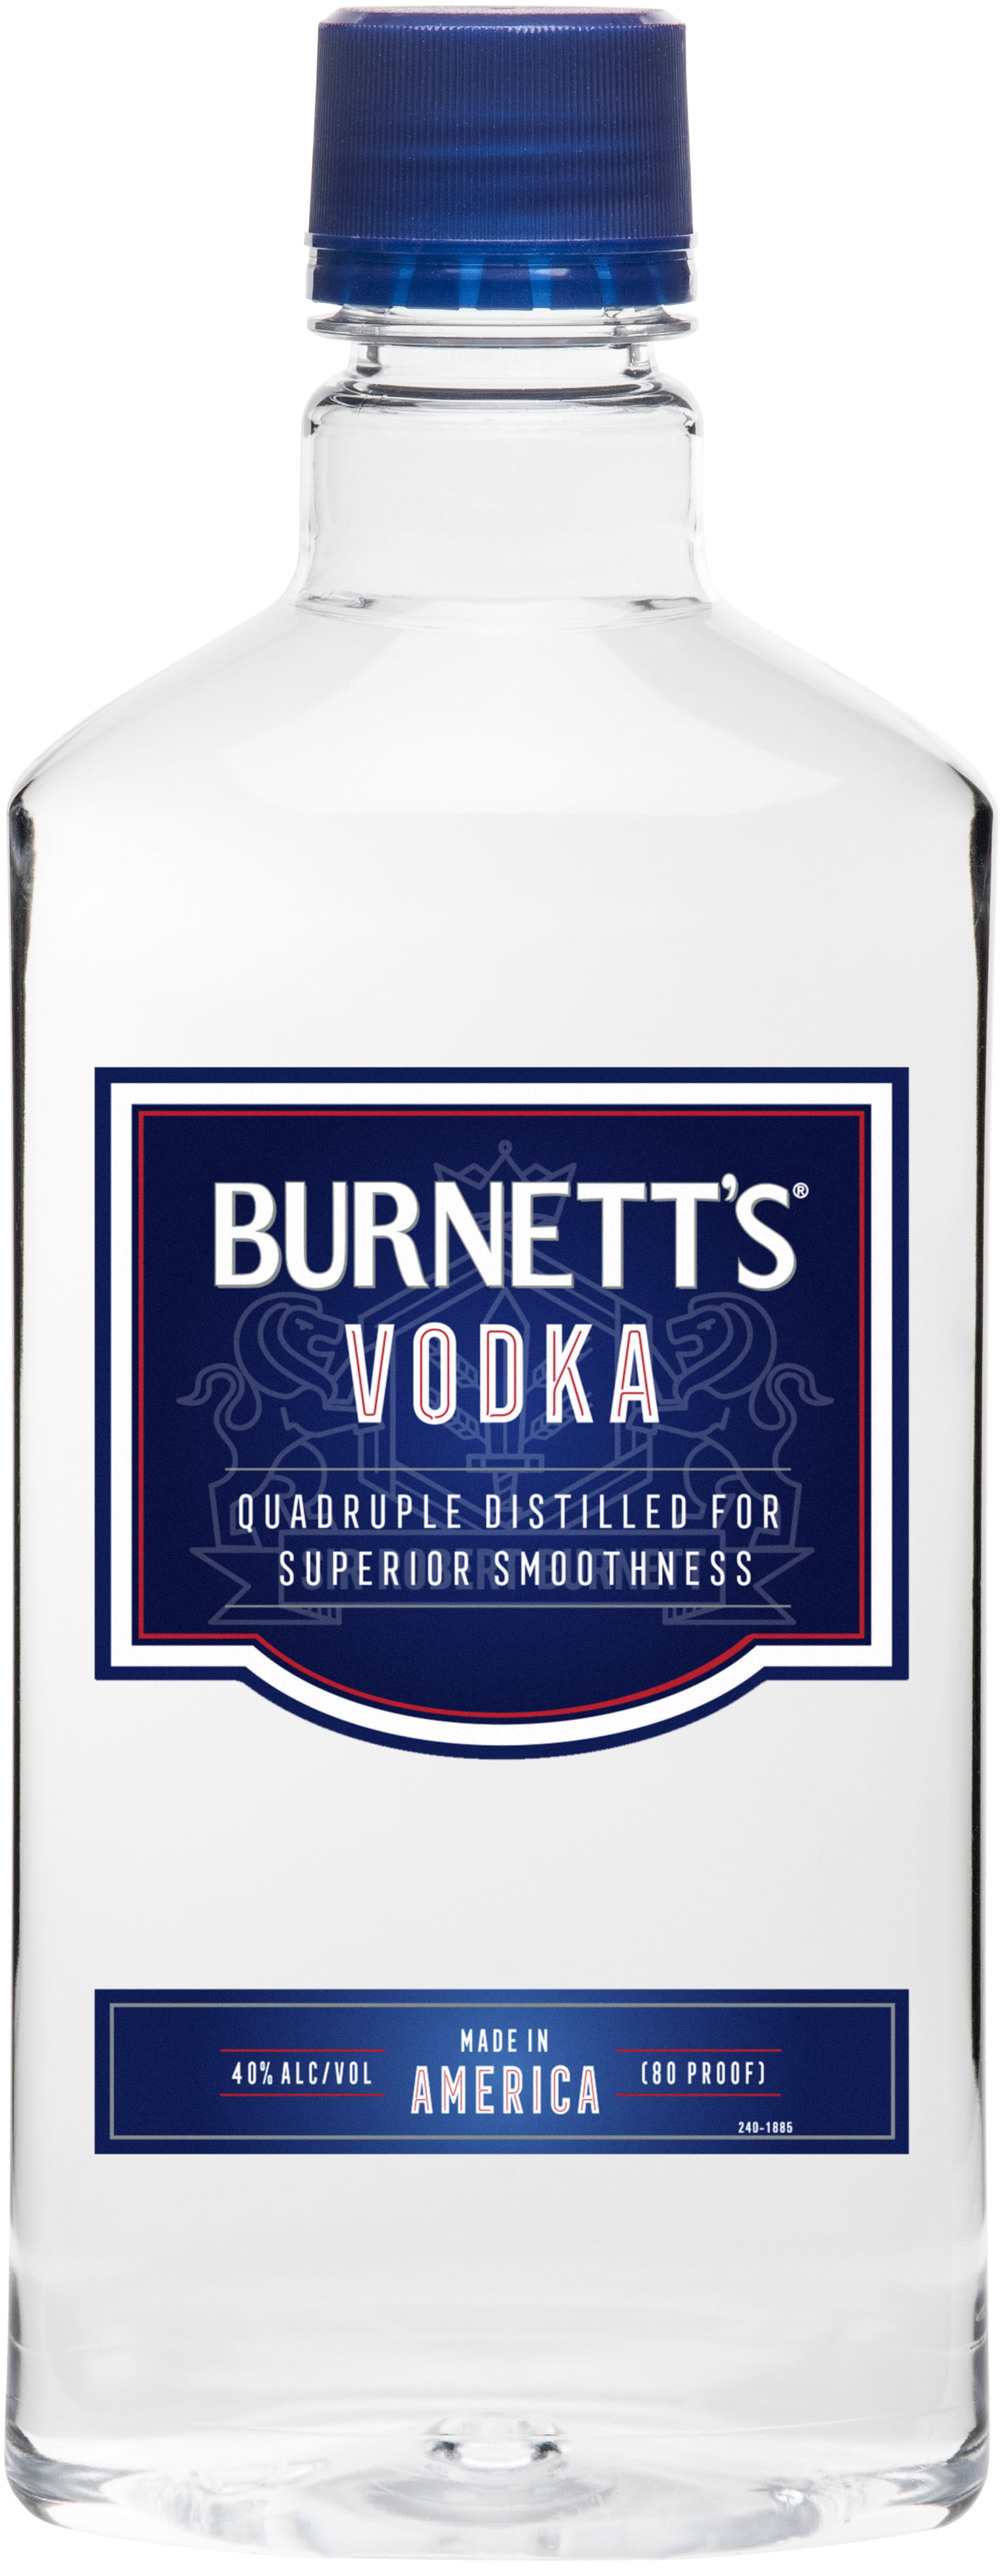 burnett-s-vodka-750-ml-pet-bottle-walmart